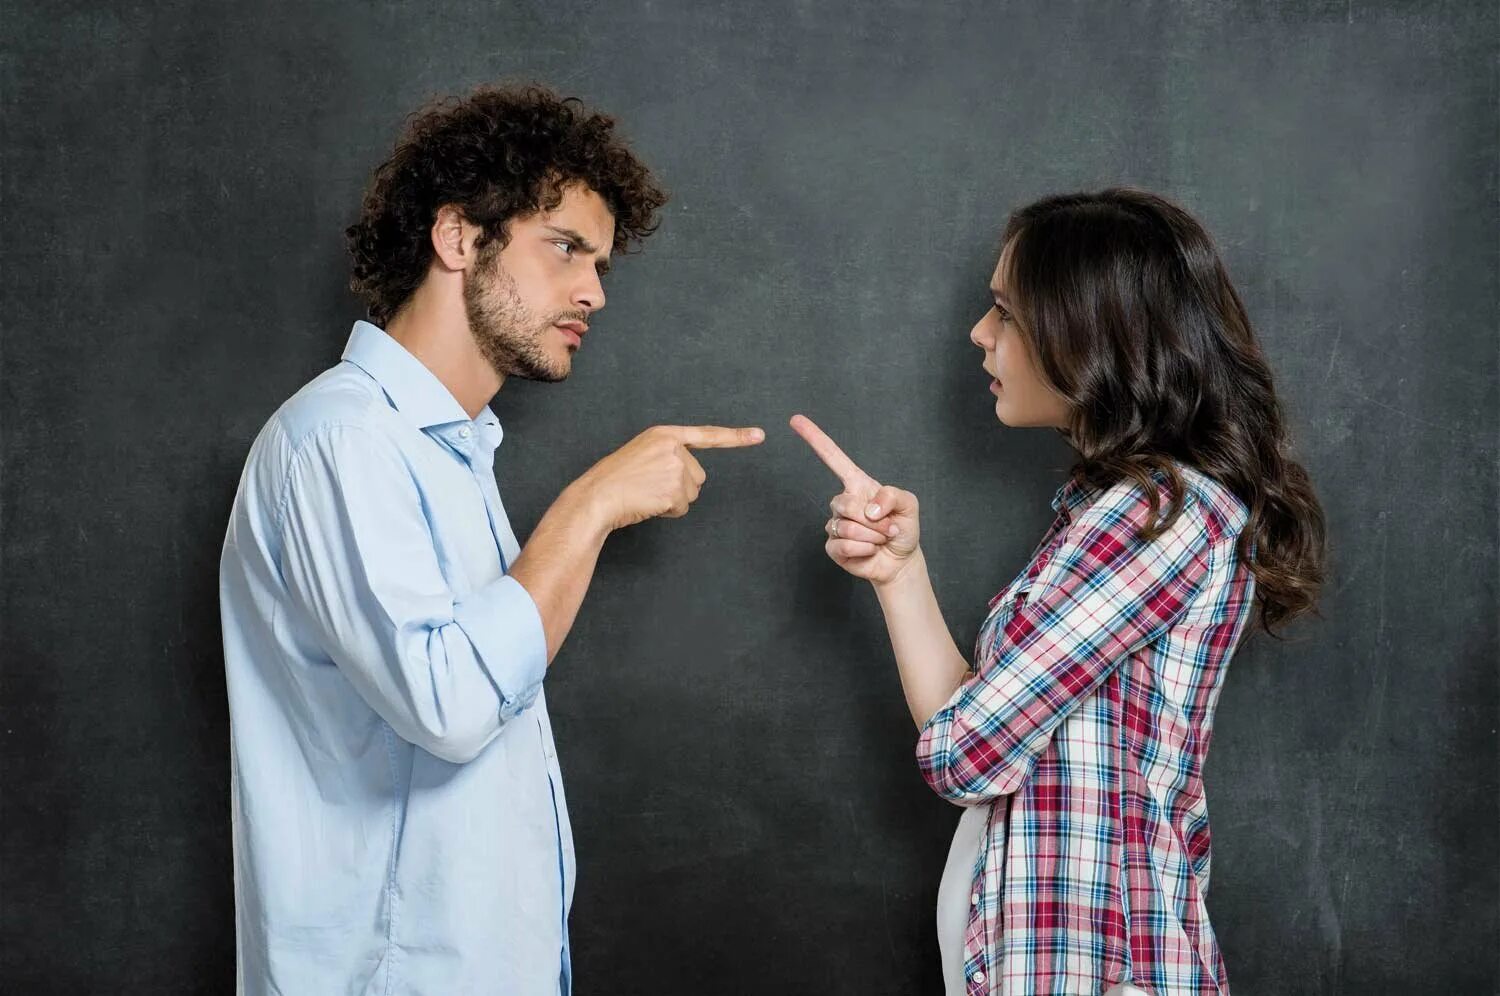 Конфликт. Люди спорят. Мужчина и женщина спорят. Спор между мужчиной и женщиной. Коллизия интересов